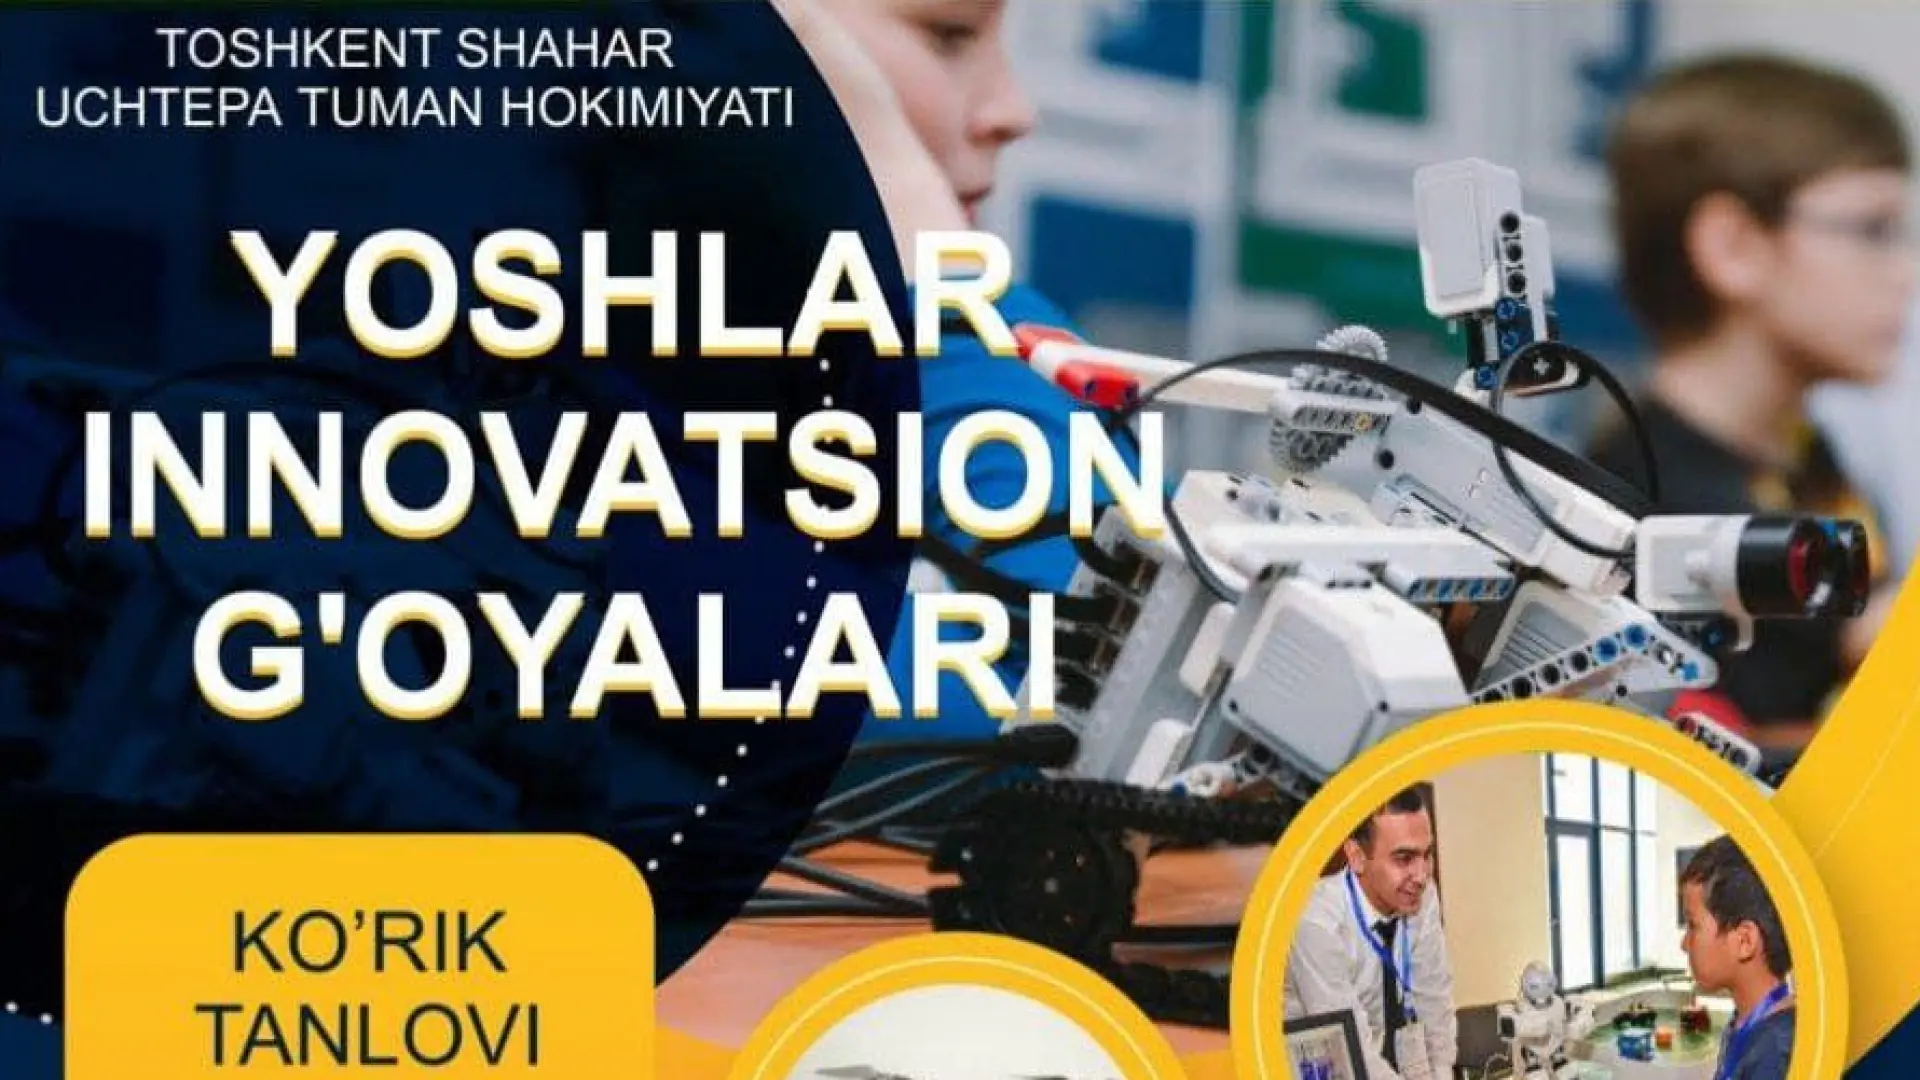 Toshkent shahar Uchtepa hokimiyati tashabbusi bilan tashkil etilayotgan "Yoshlar innovatsion g'oyalari" ko'rik tanlovi 